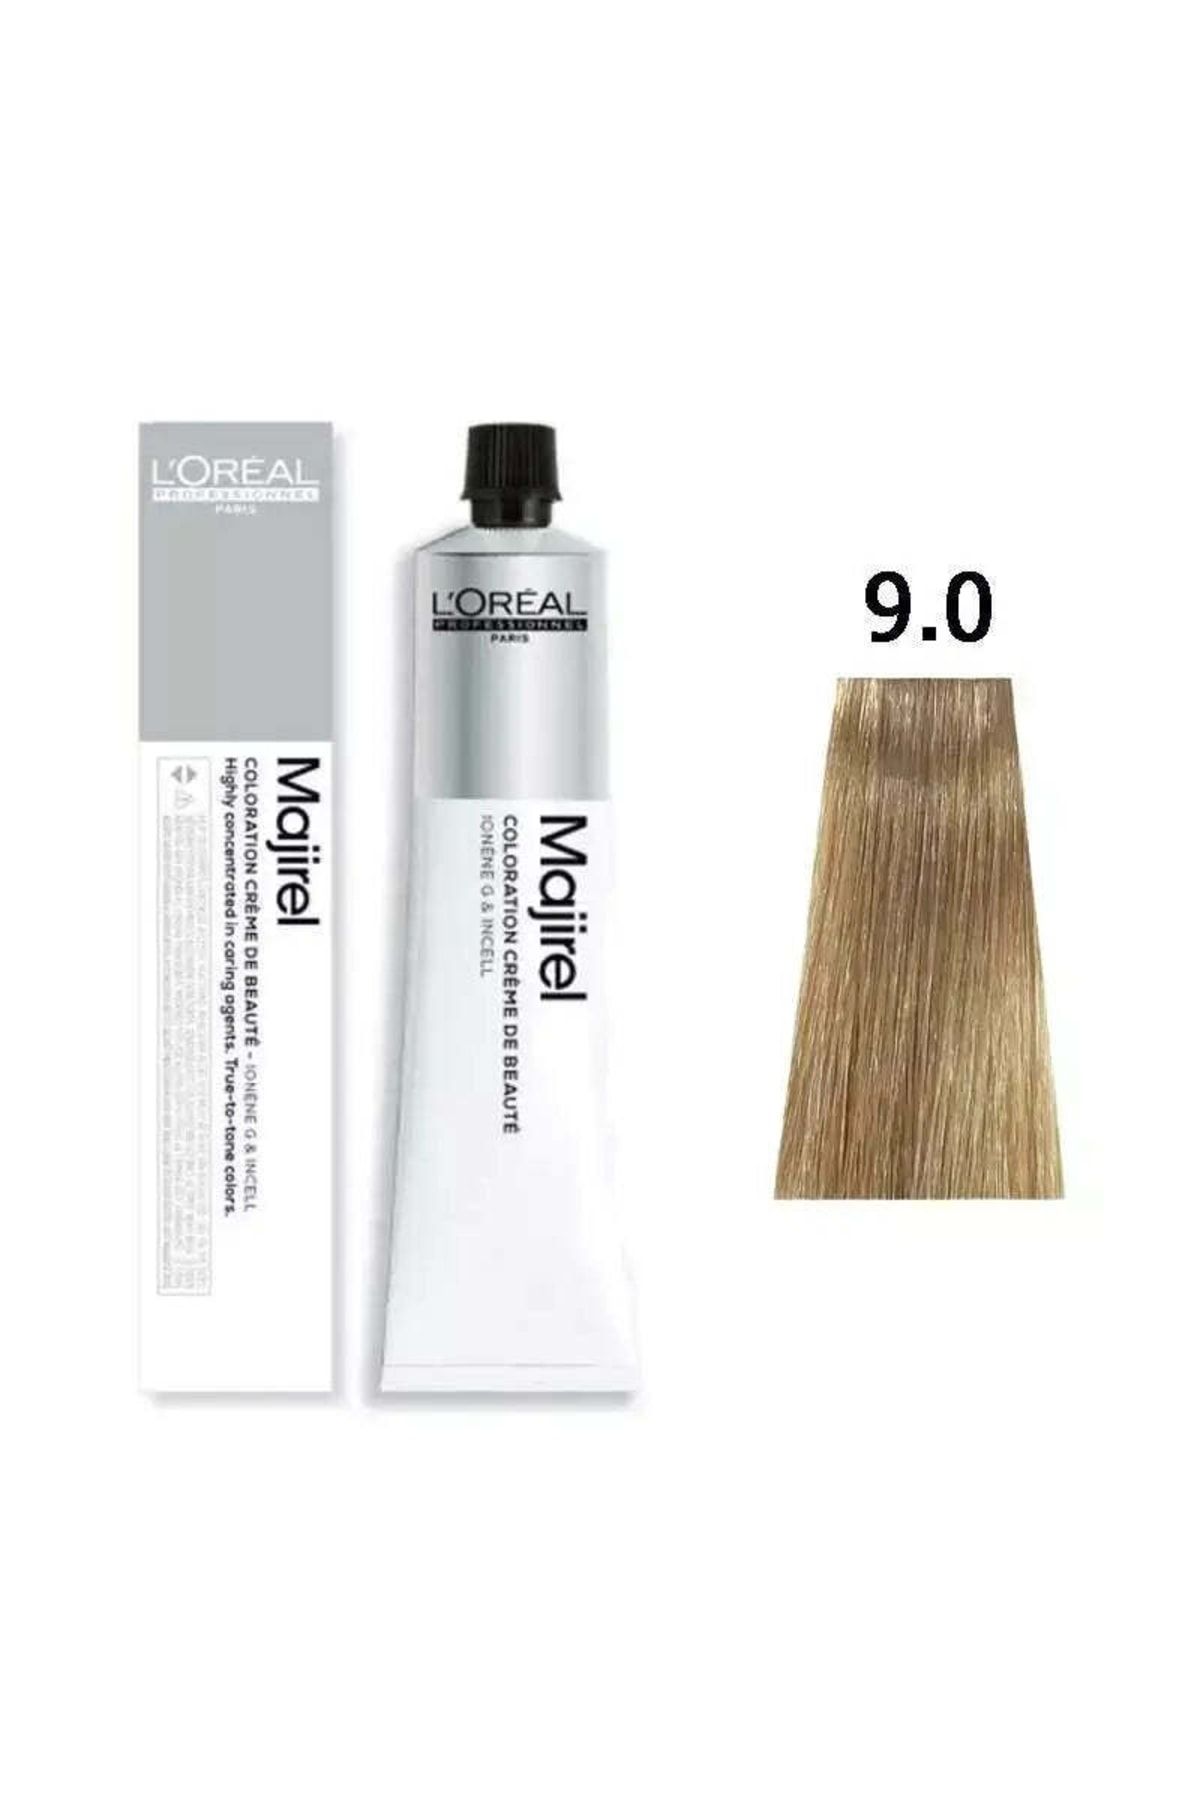 L'oreal Professionnel Orıjınal Yeni Ürün Loreal Majirel Saç Boyası 9.0 Yoğun Sarı 50ml